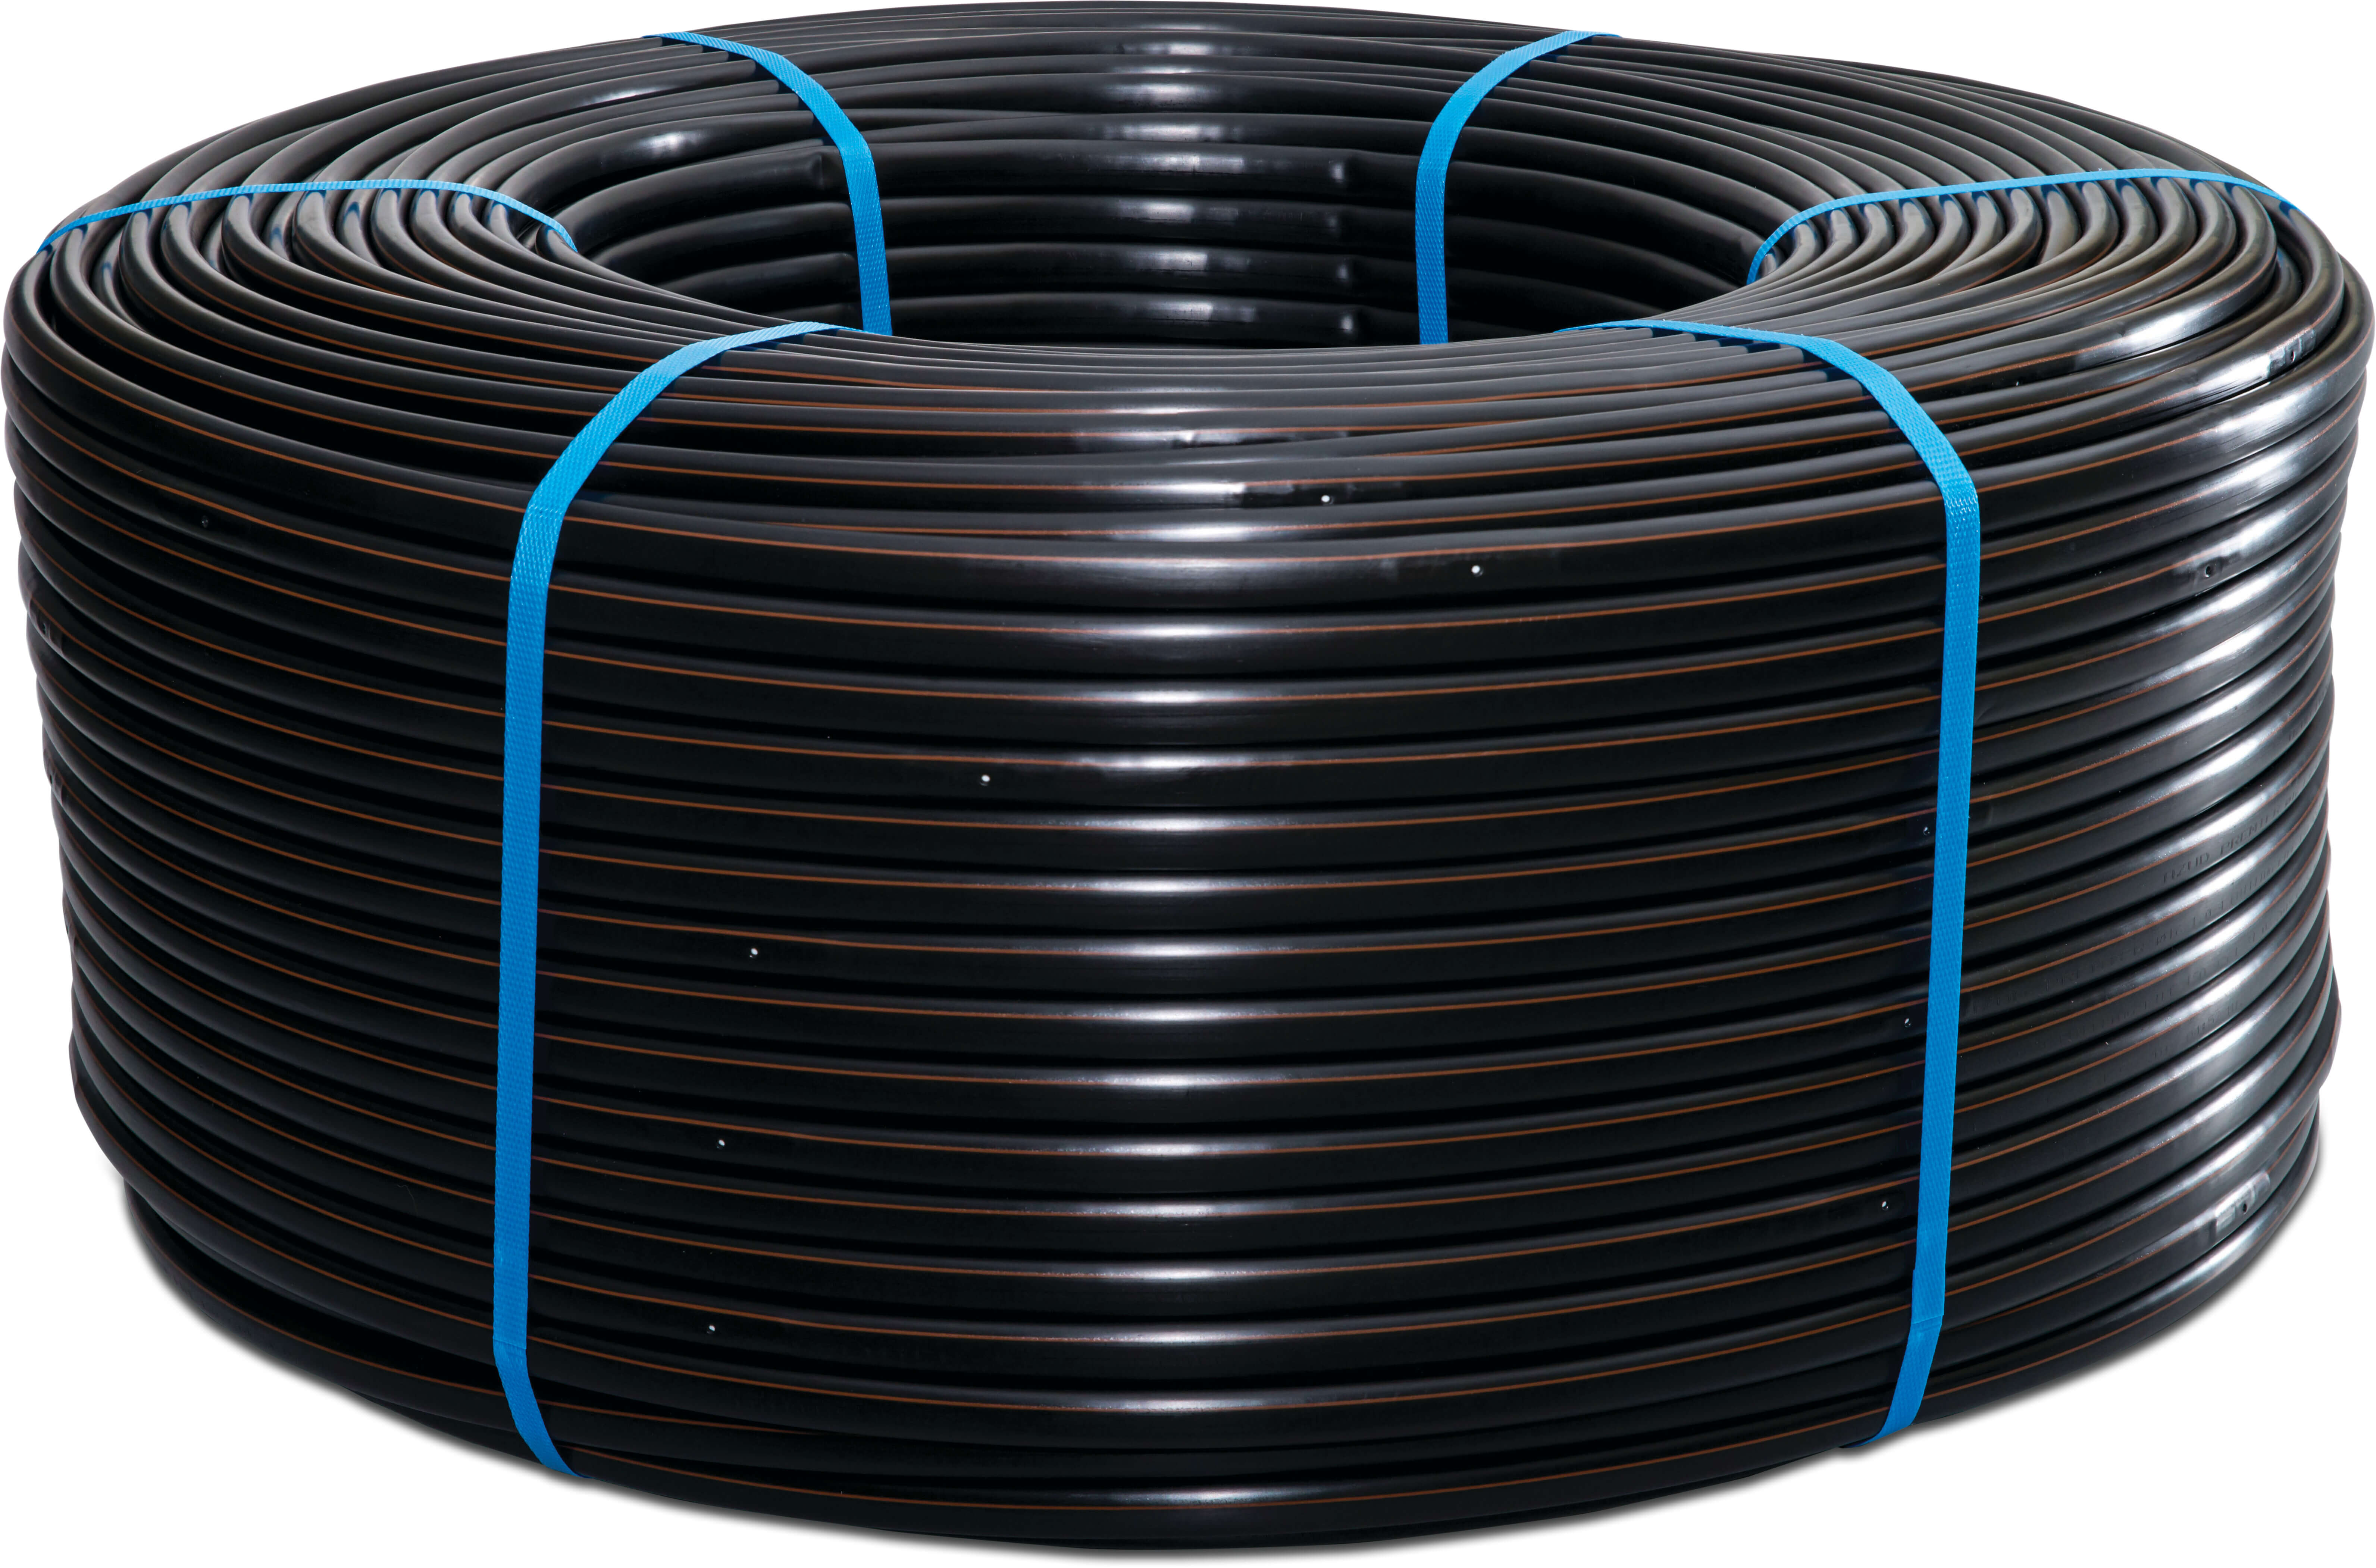 Azud Drip irrigation hose PE 20 mm x 1,2 mm 1,6ltr/h 20cm black 250m type Premier PC AS